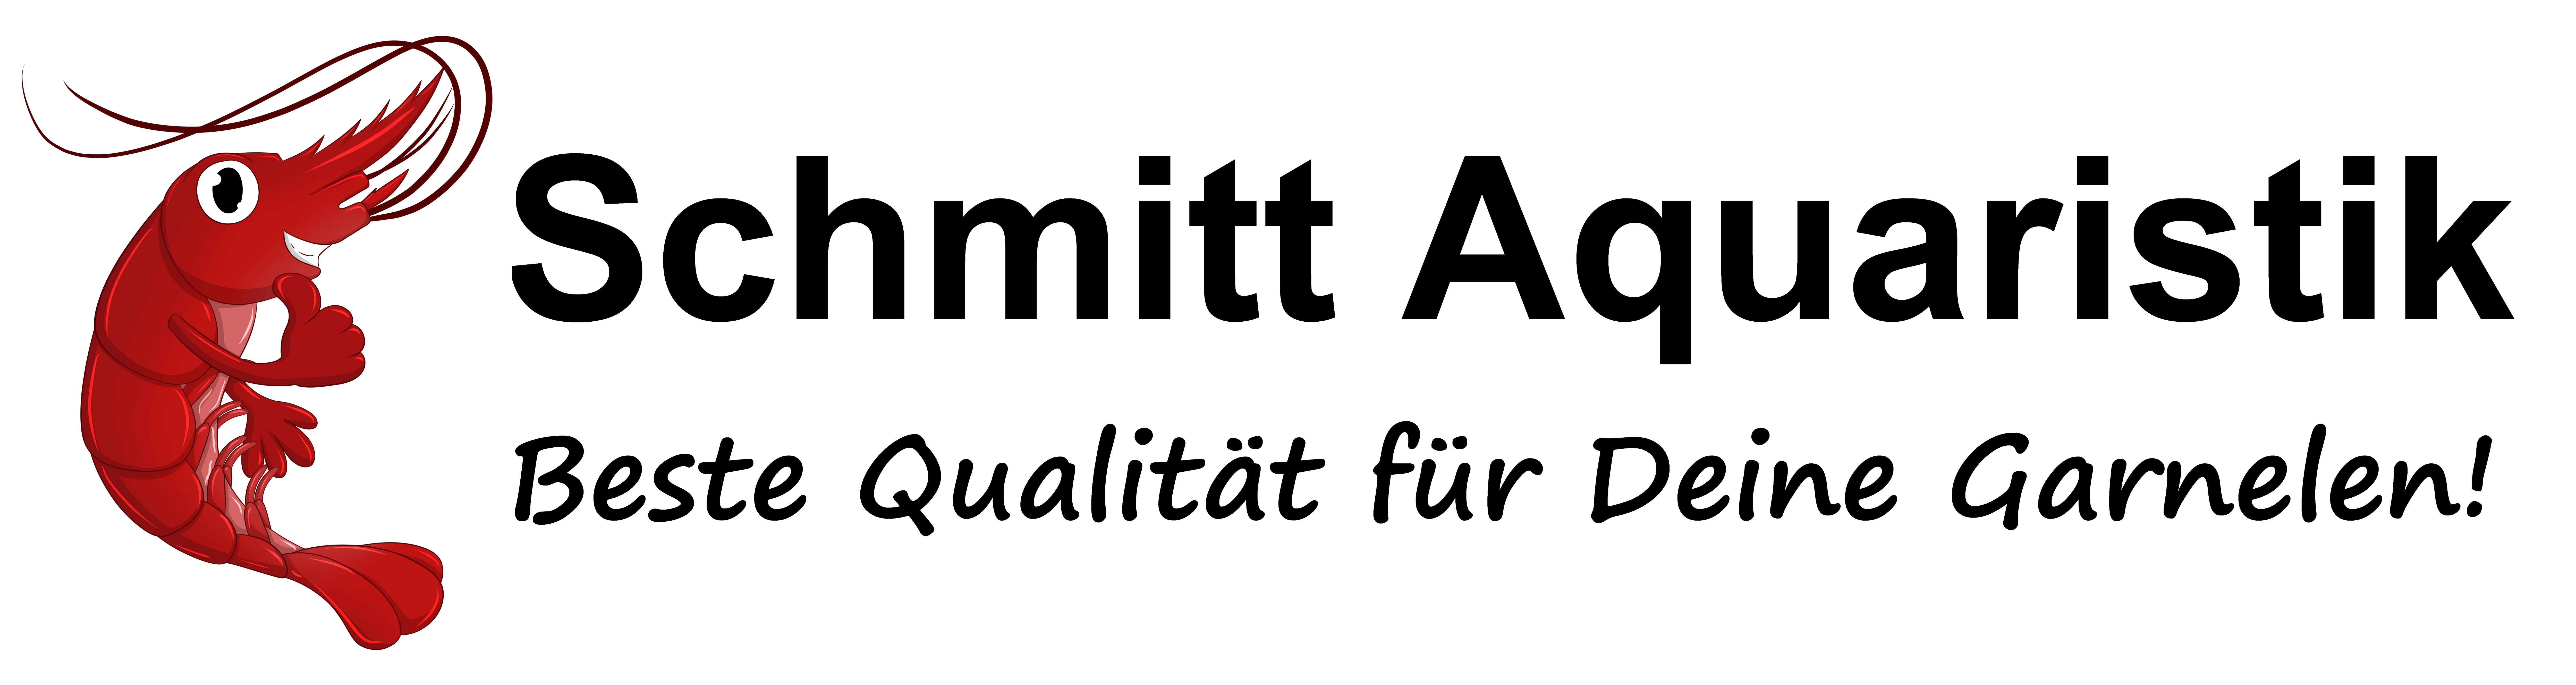 schmitt-aquaristik.de